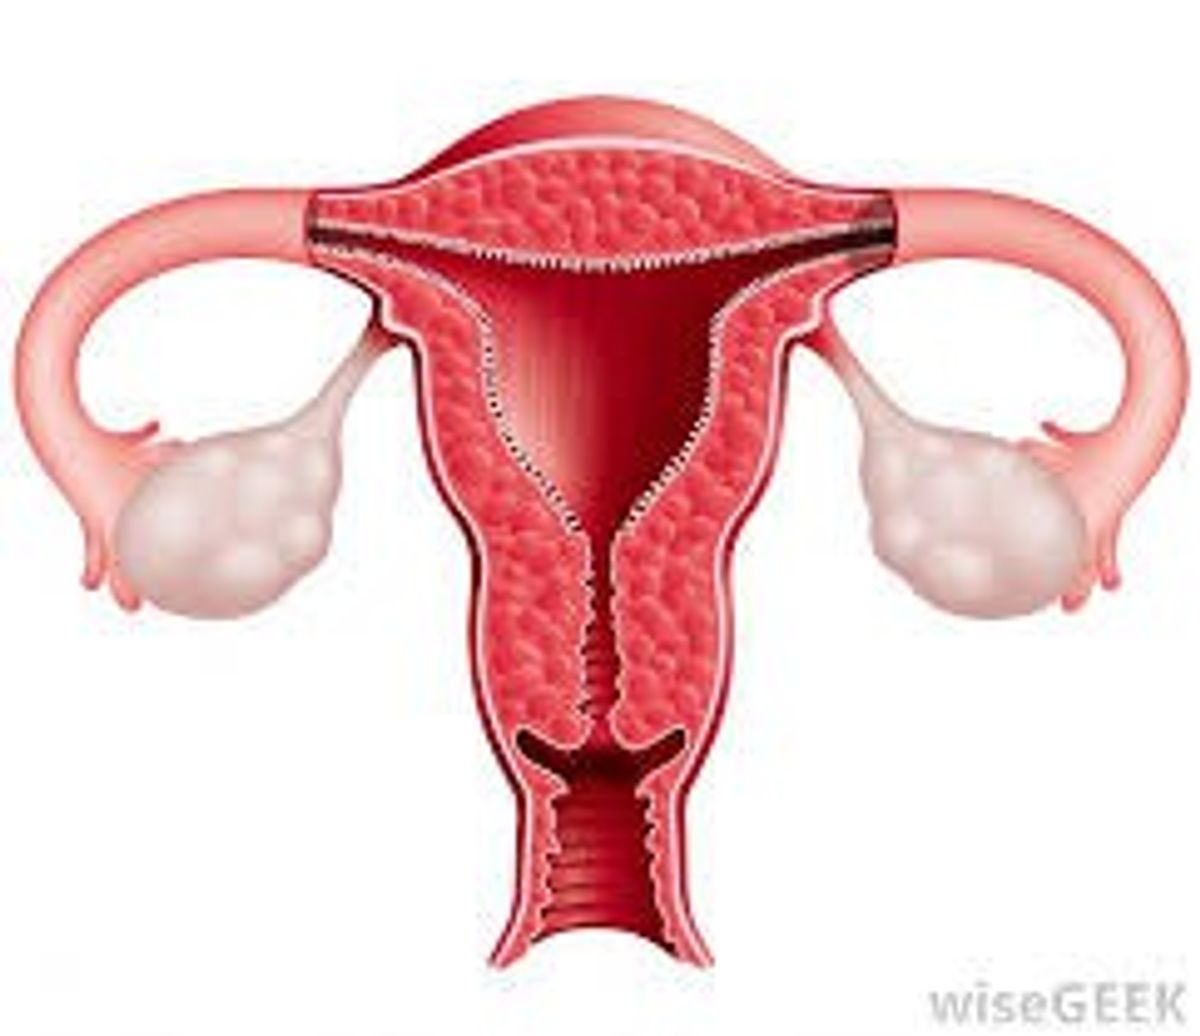 Uterus Transplants For Infertile Women In The U.S.